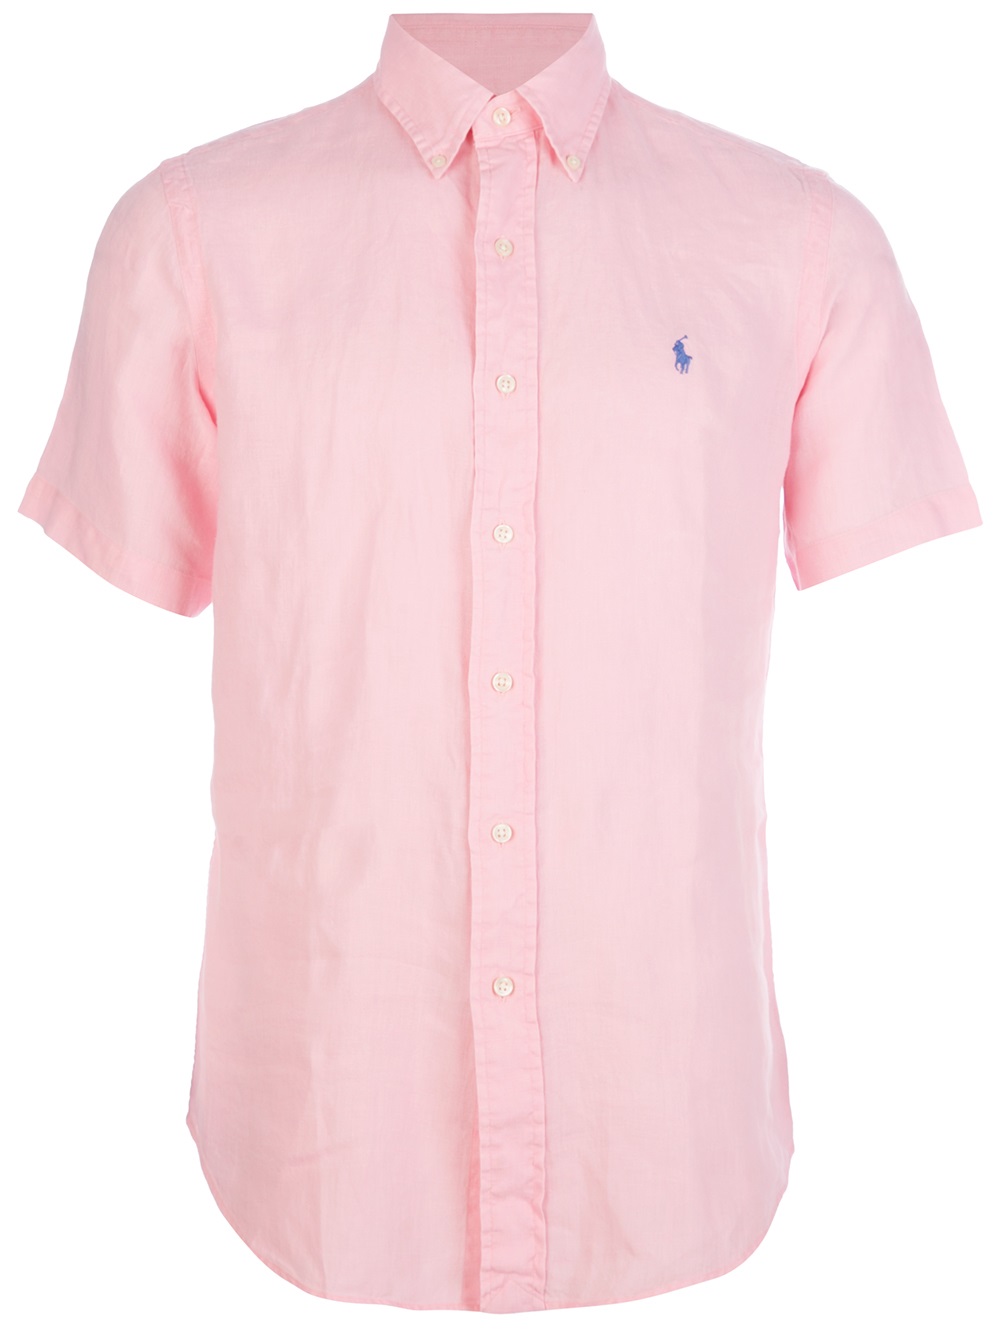 ralph lauren pink short sleeve shirt